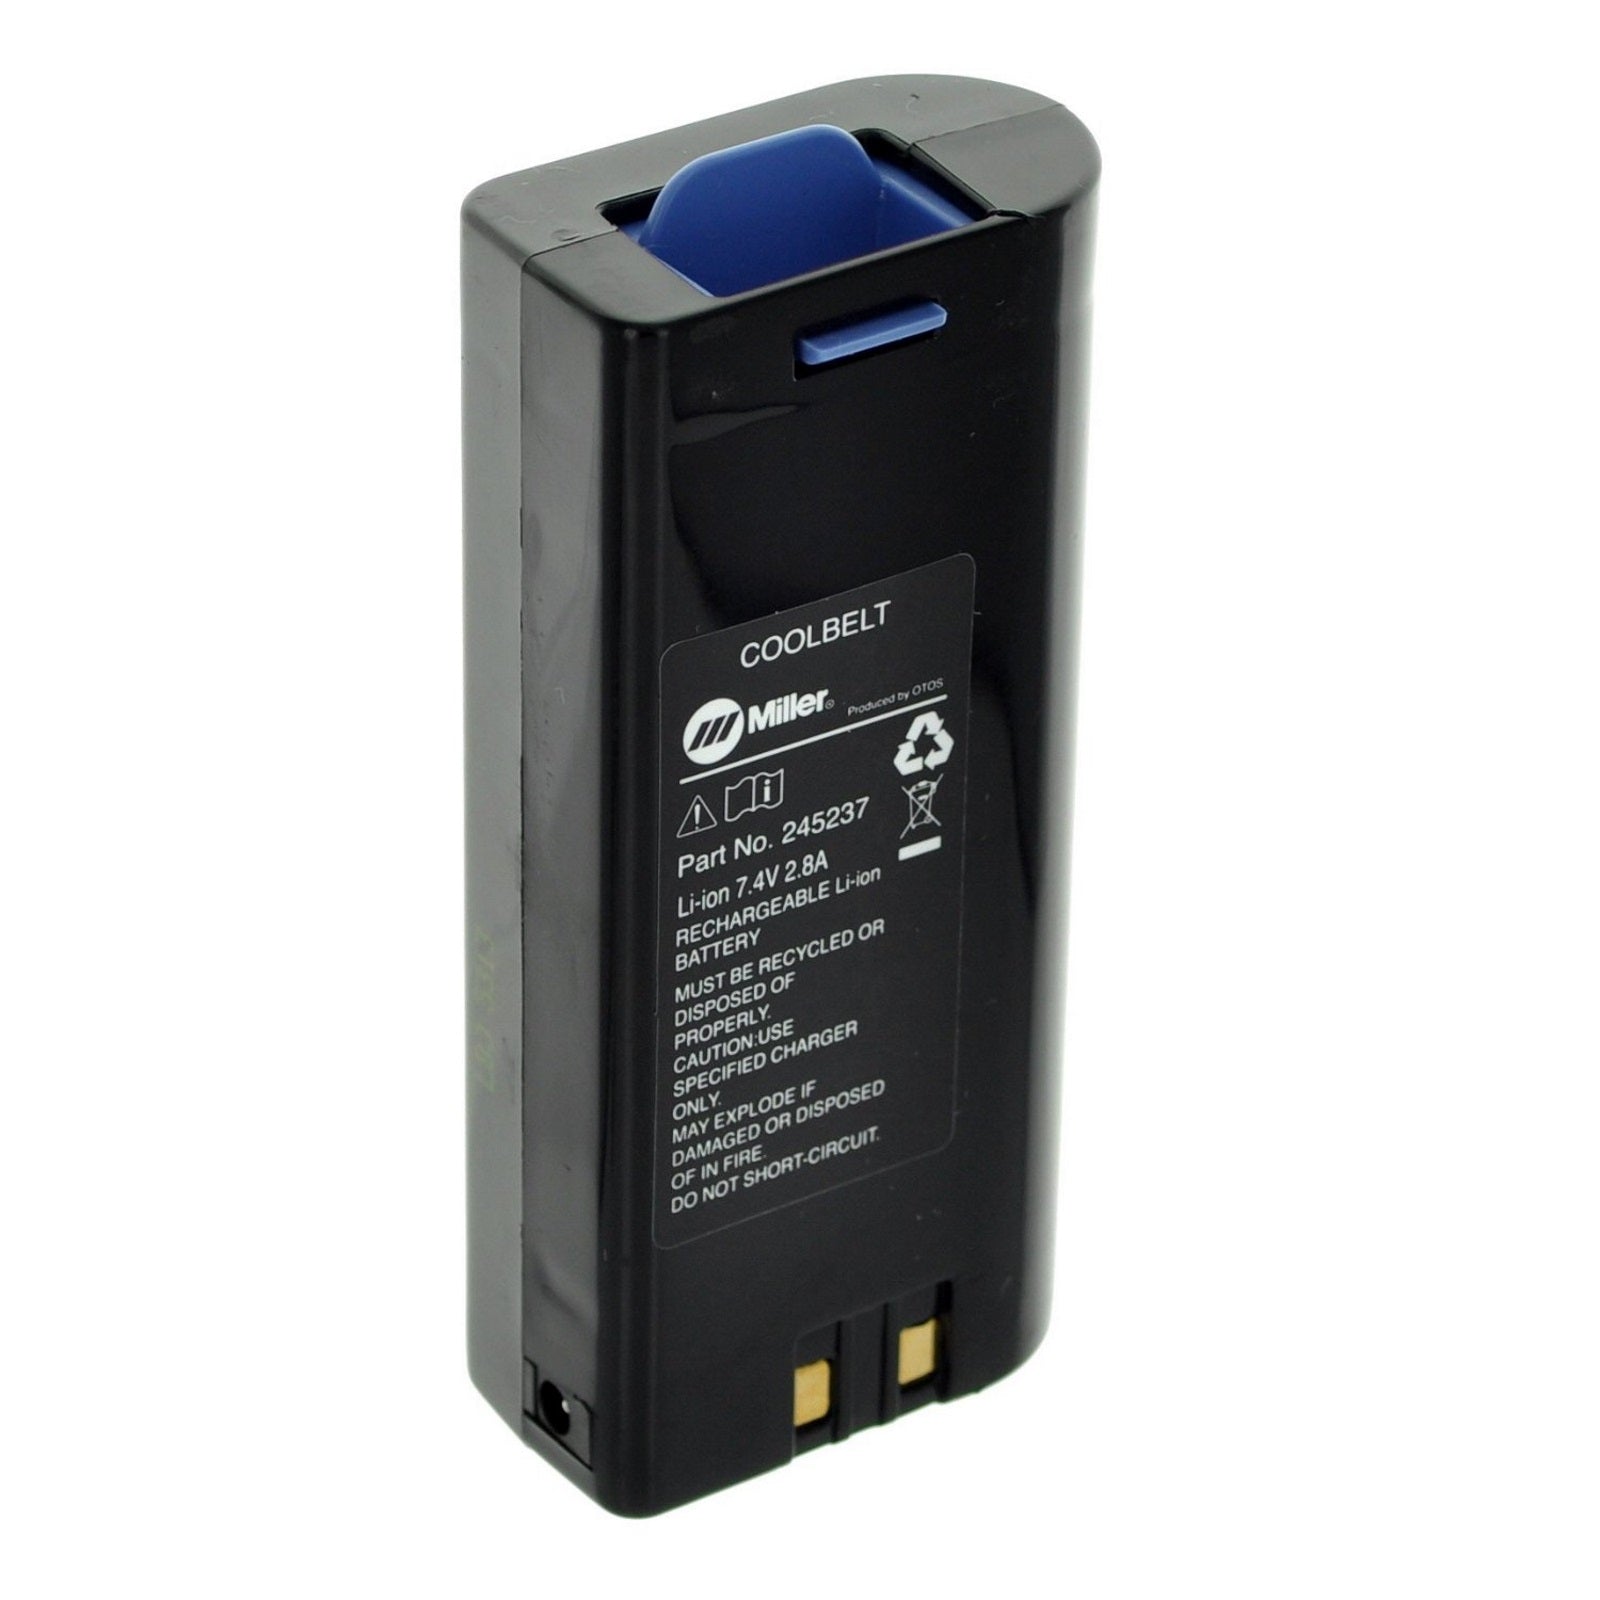 Miller Battery For Coolbelt (245237)